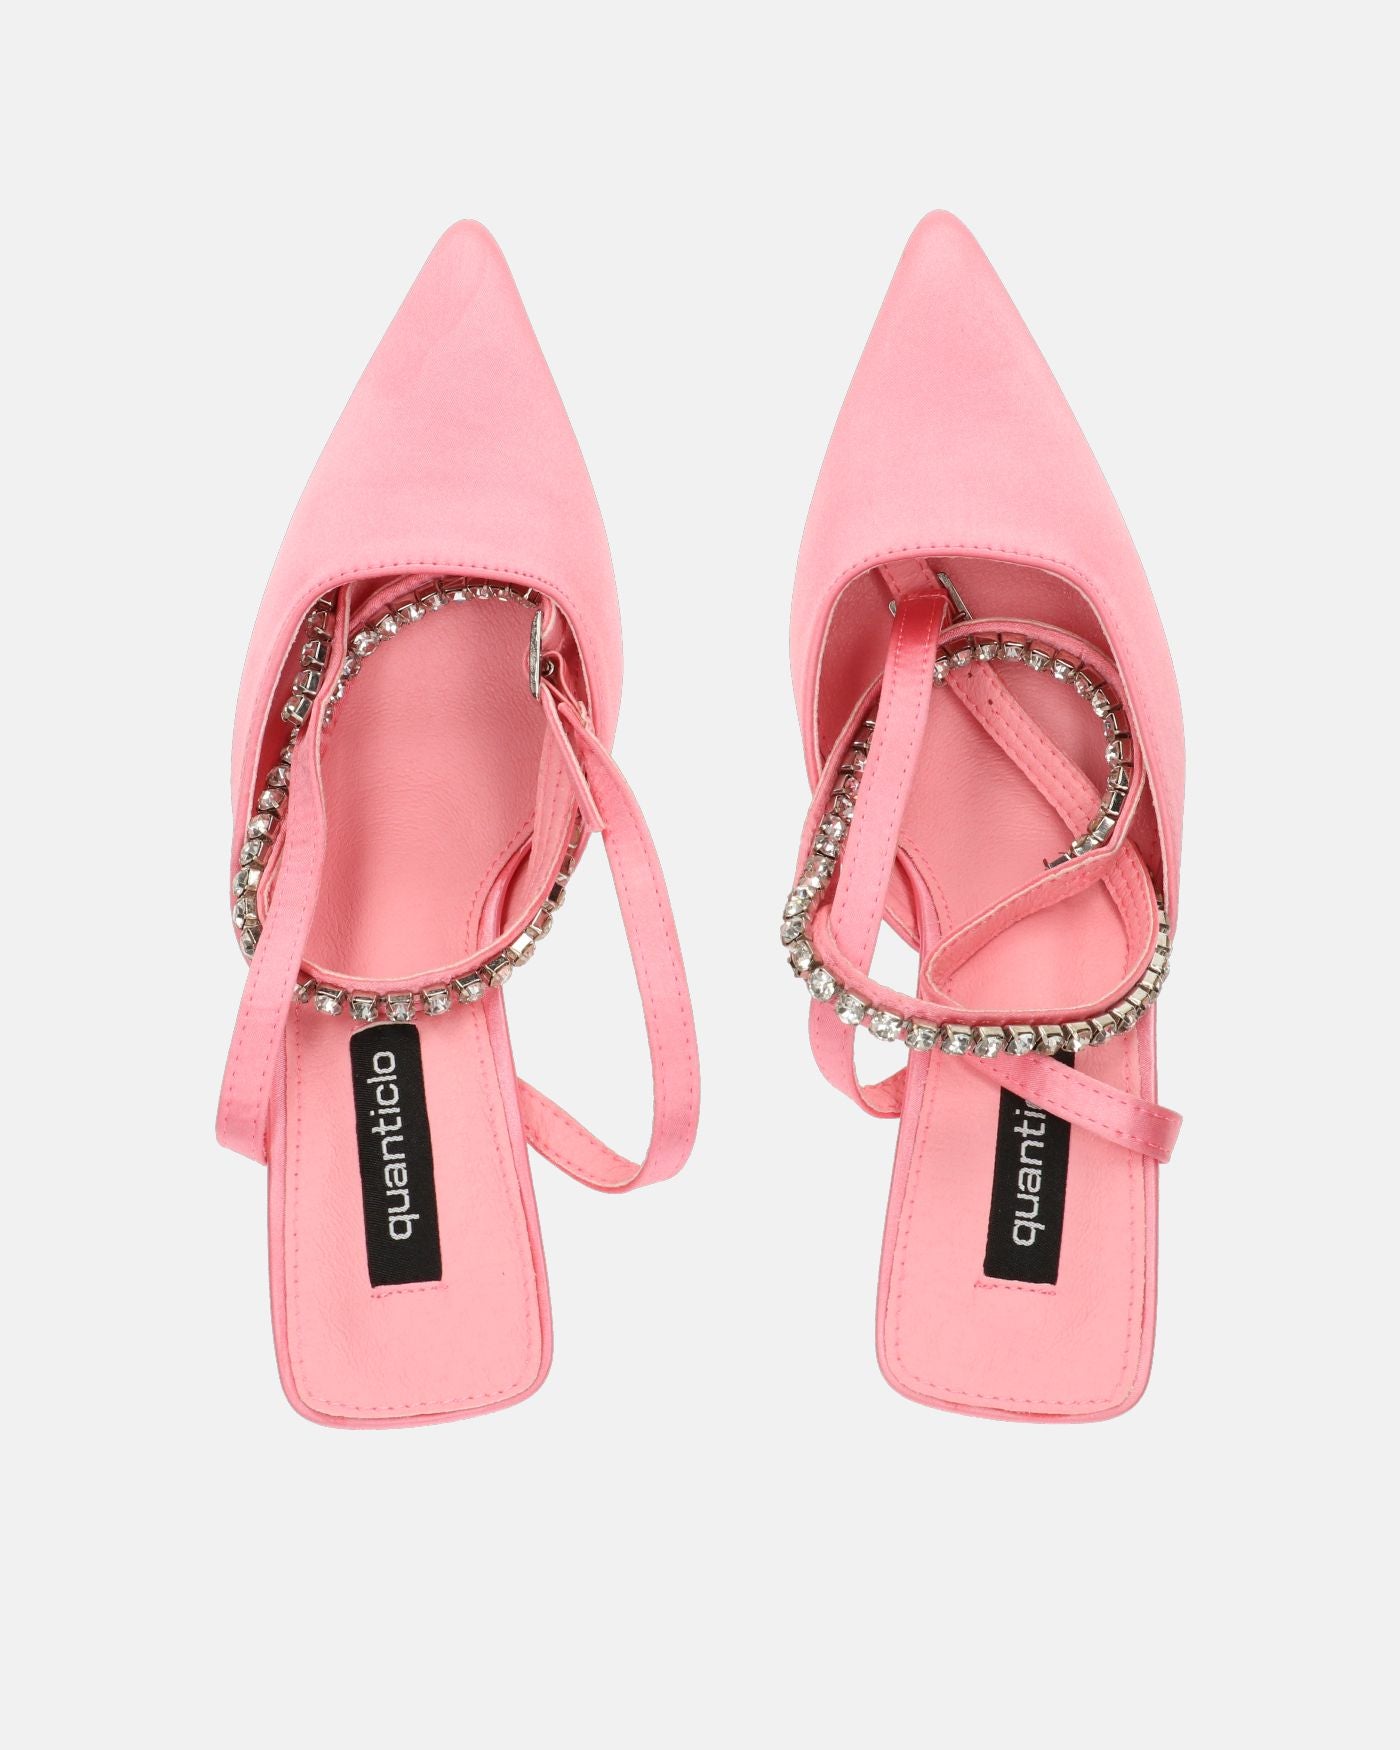 DORIS - scarpe con tacco il lycra rosa chiaro e gemme sul cinturino